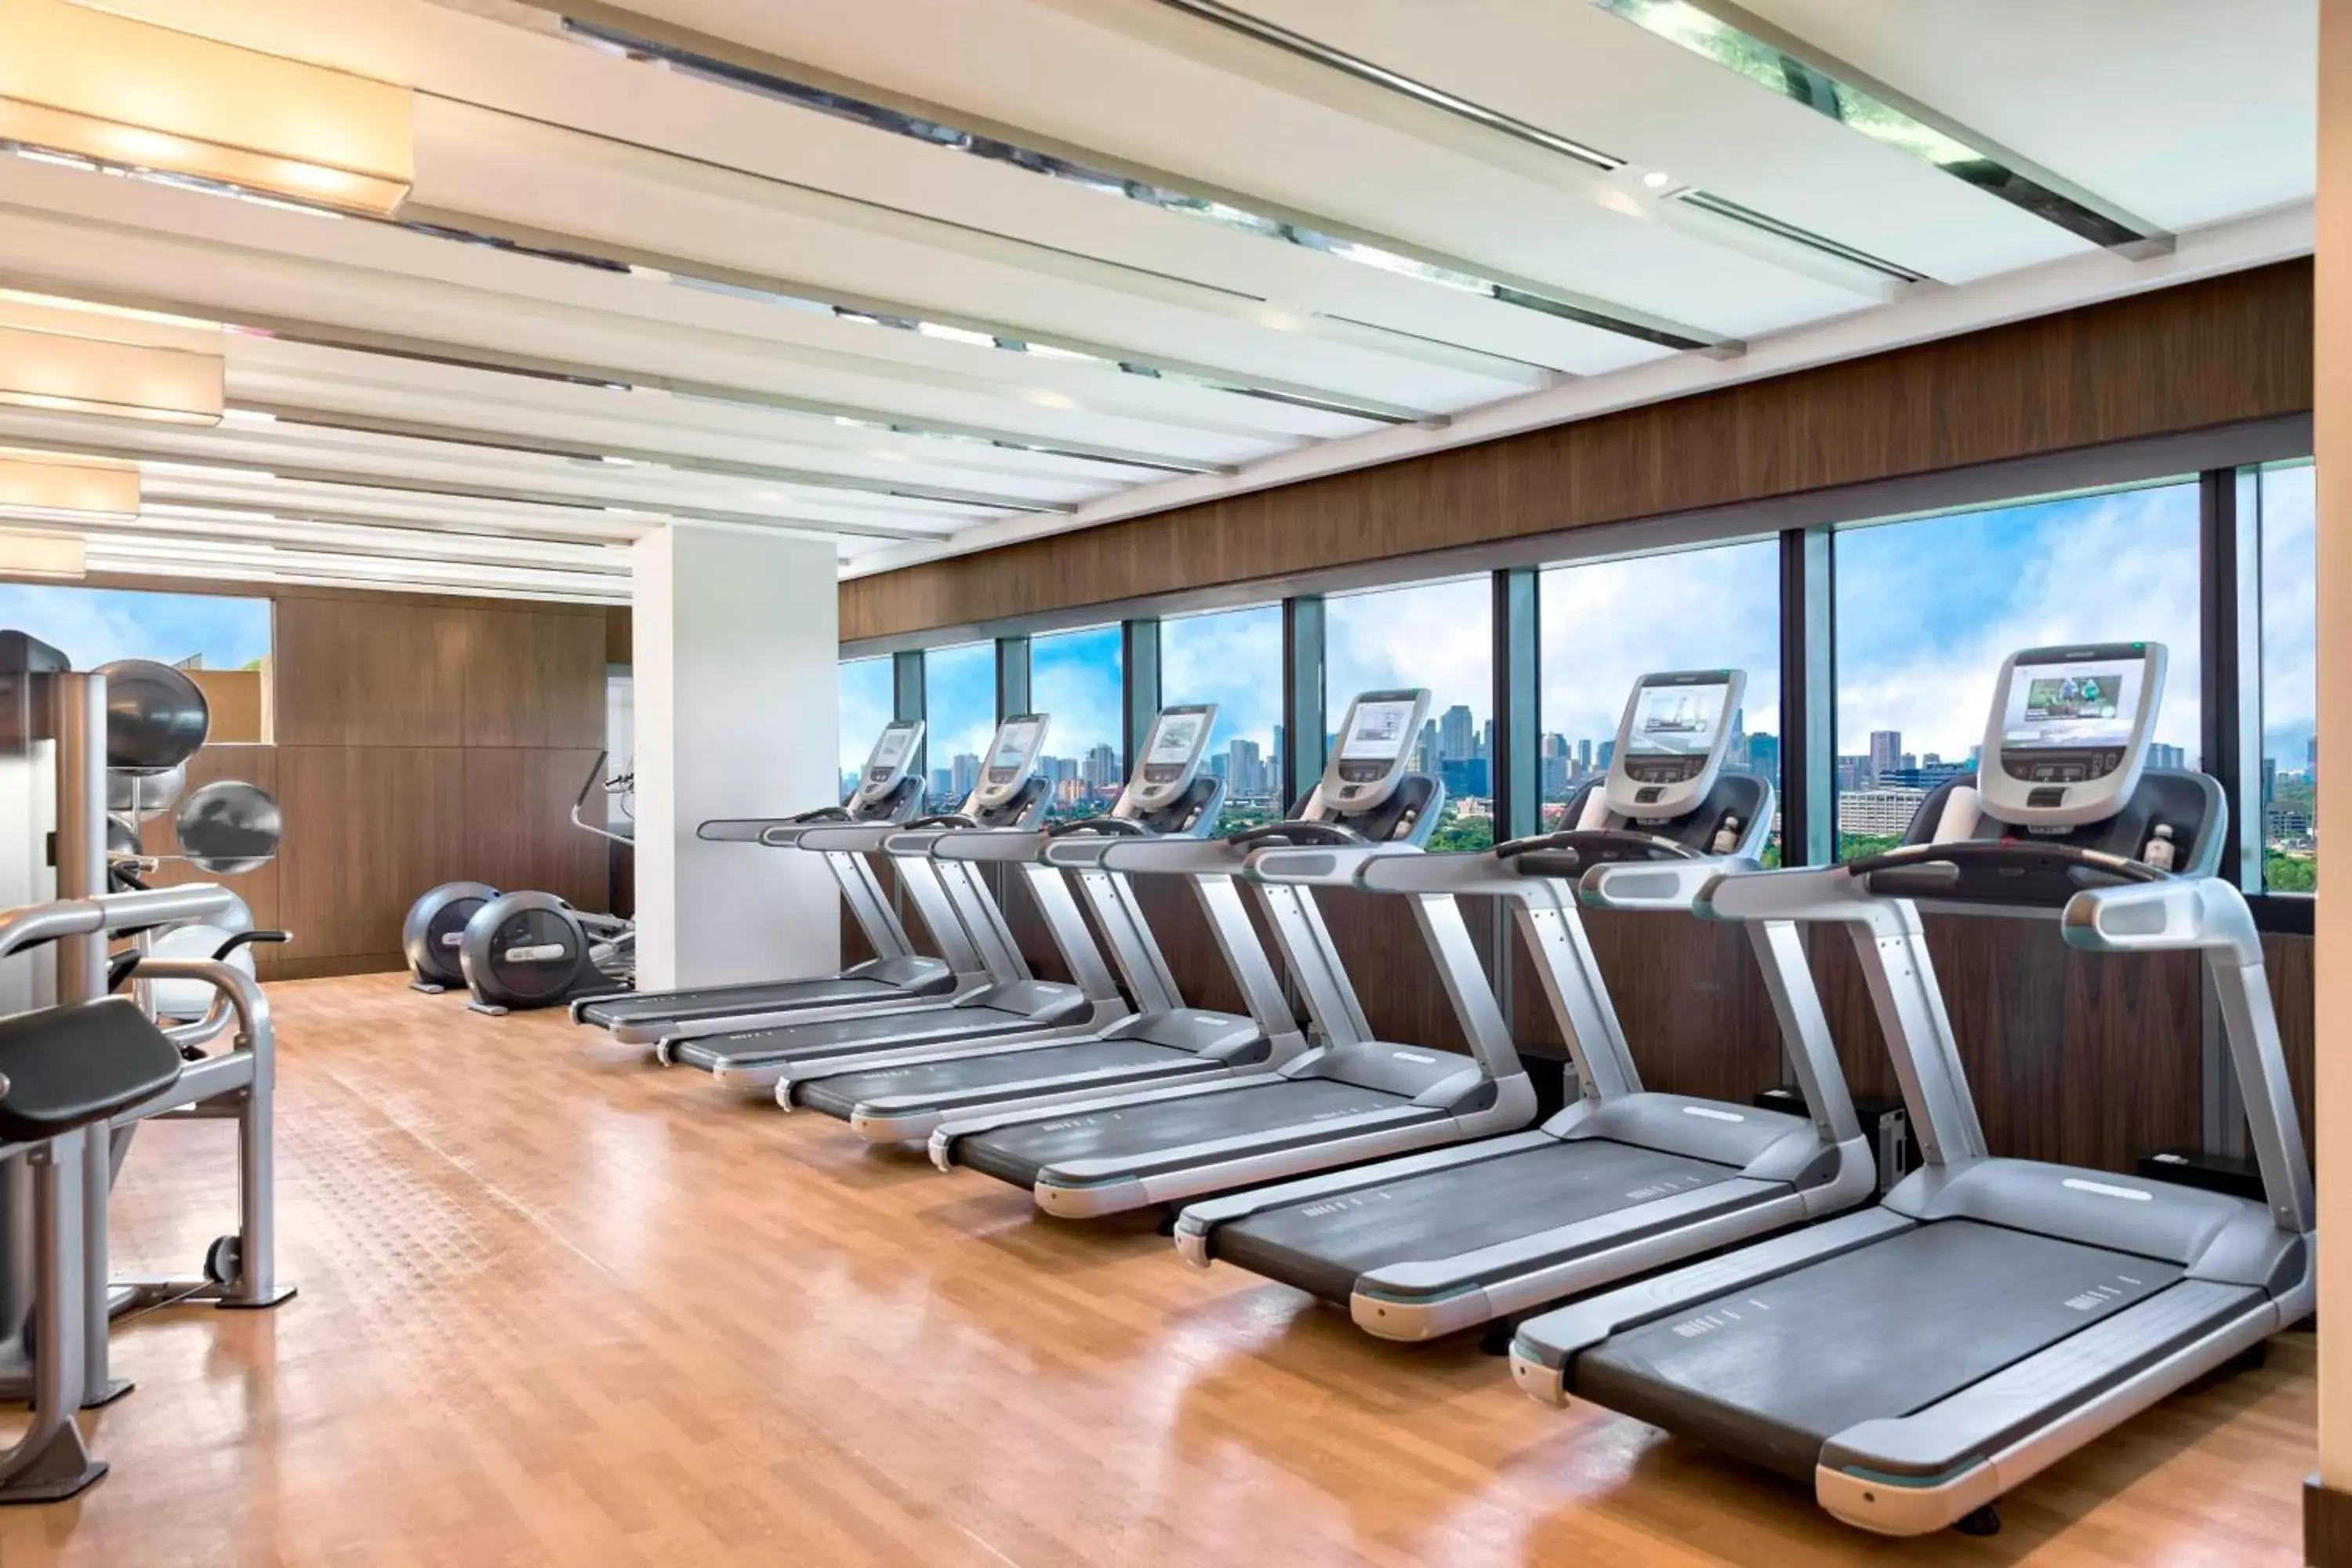 Fitness centre/facilities, Fitness Center/Facilities in Manila Marriott Hotel